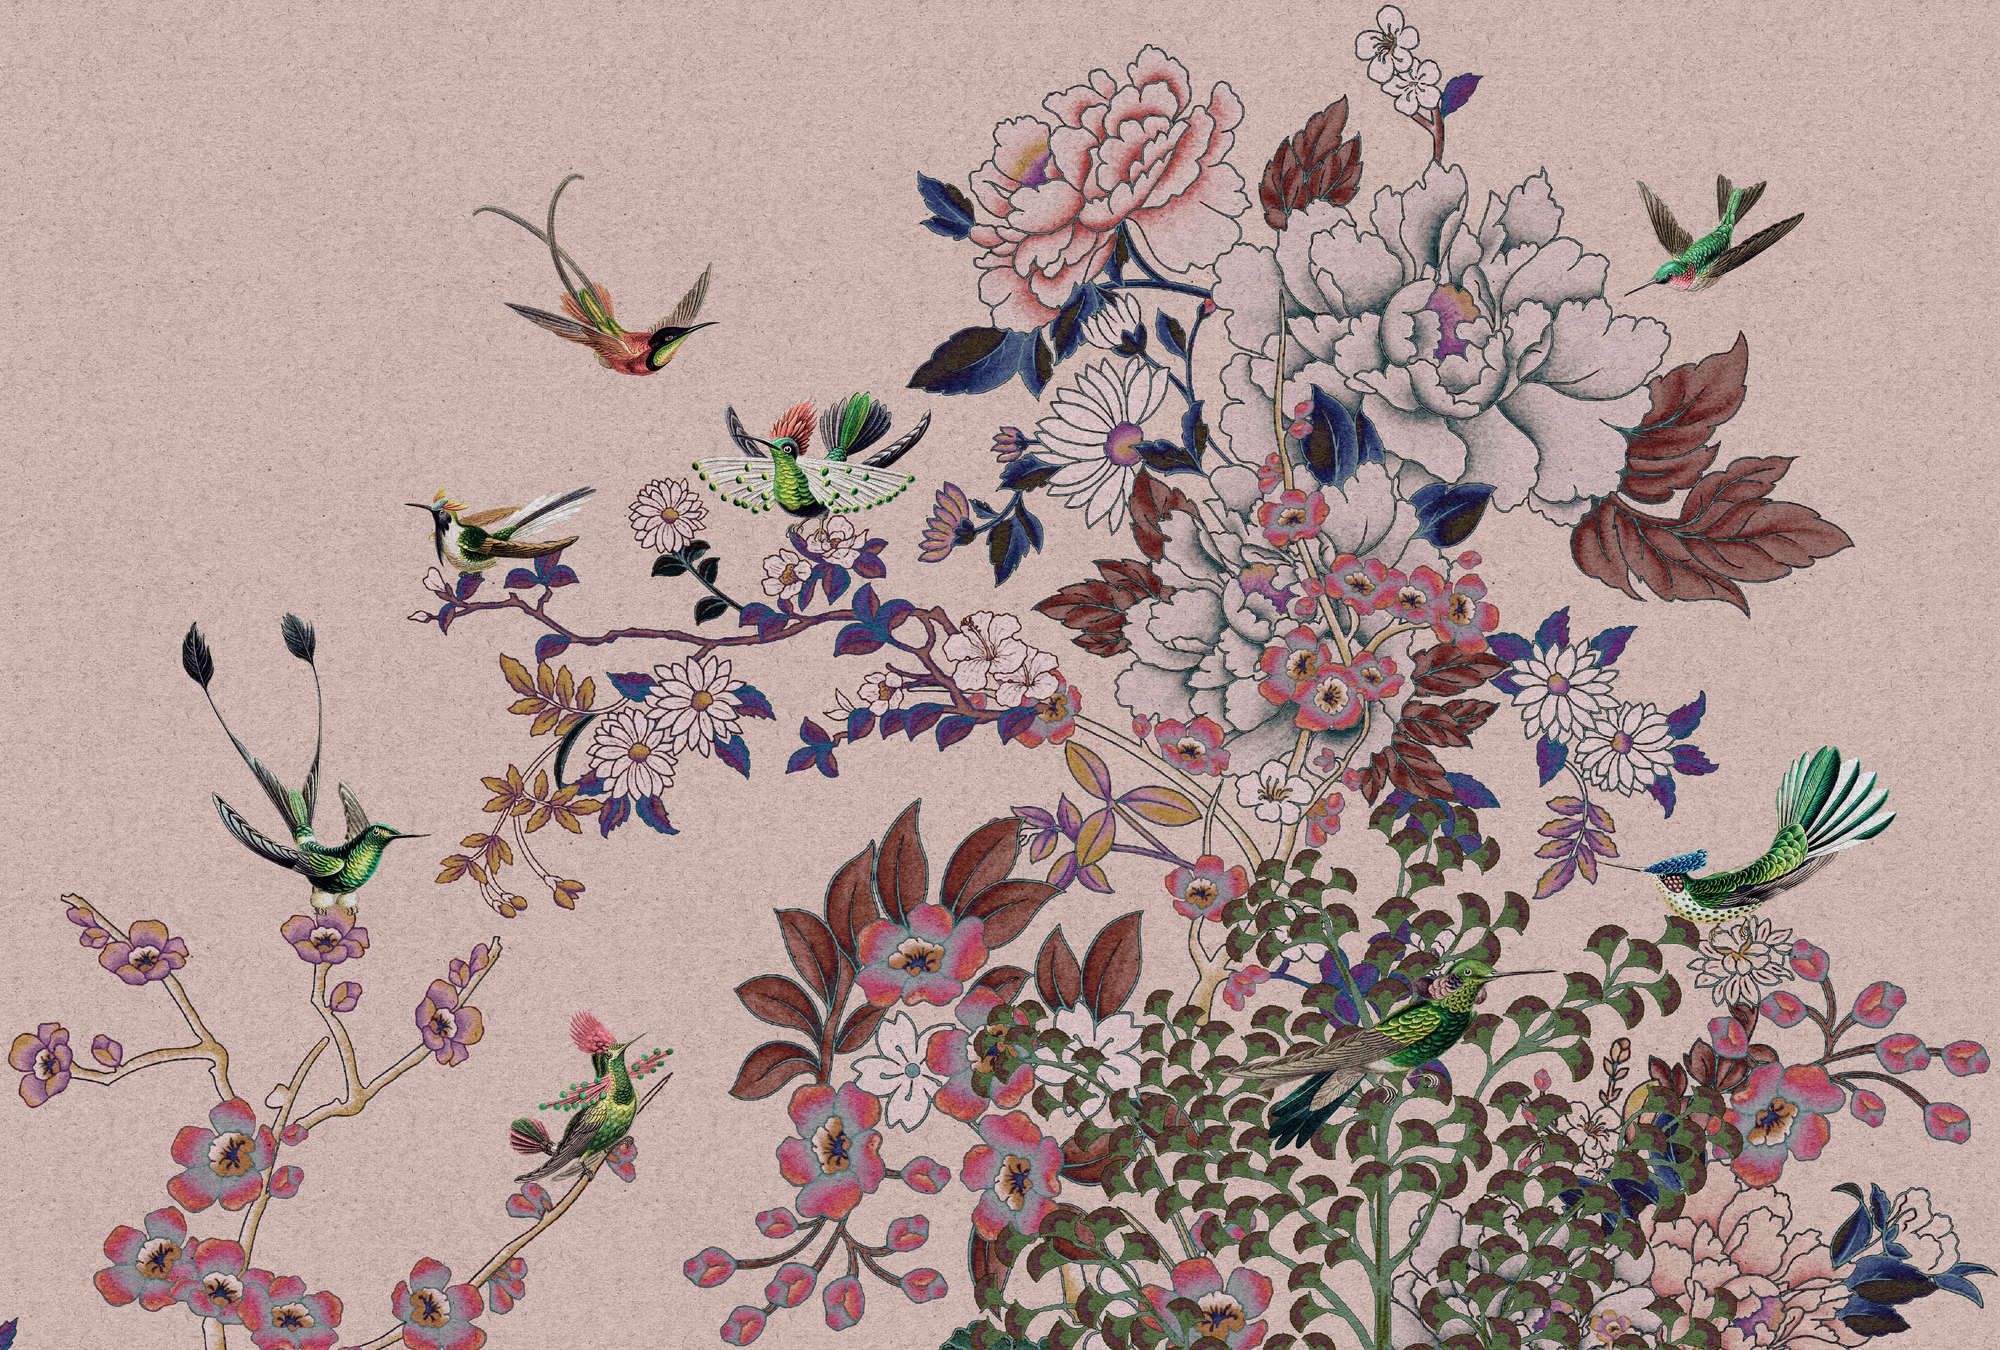             Fotomural »madras 2« - Motivo de flores rosas con colibríes sobre textura de papel kraft - Material sin tejer mate y liso
        